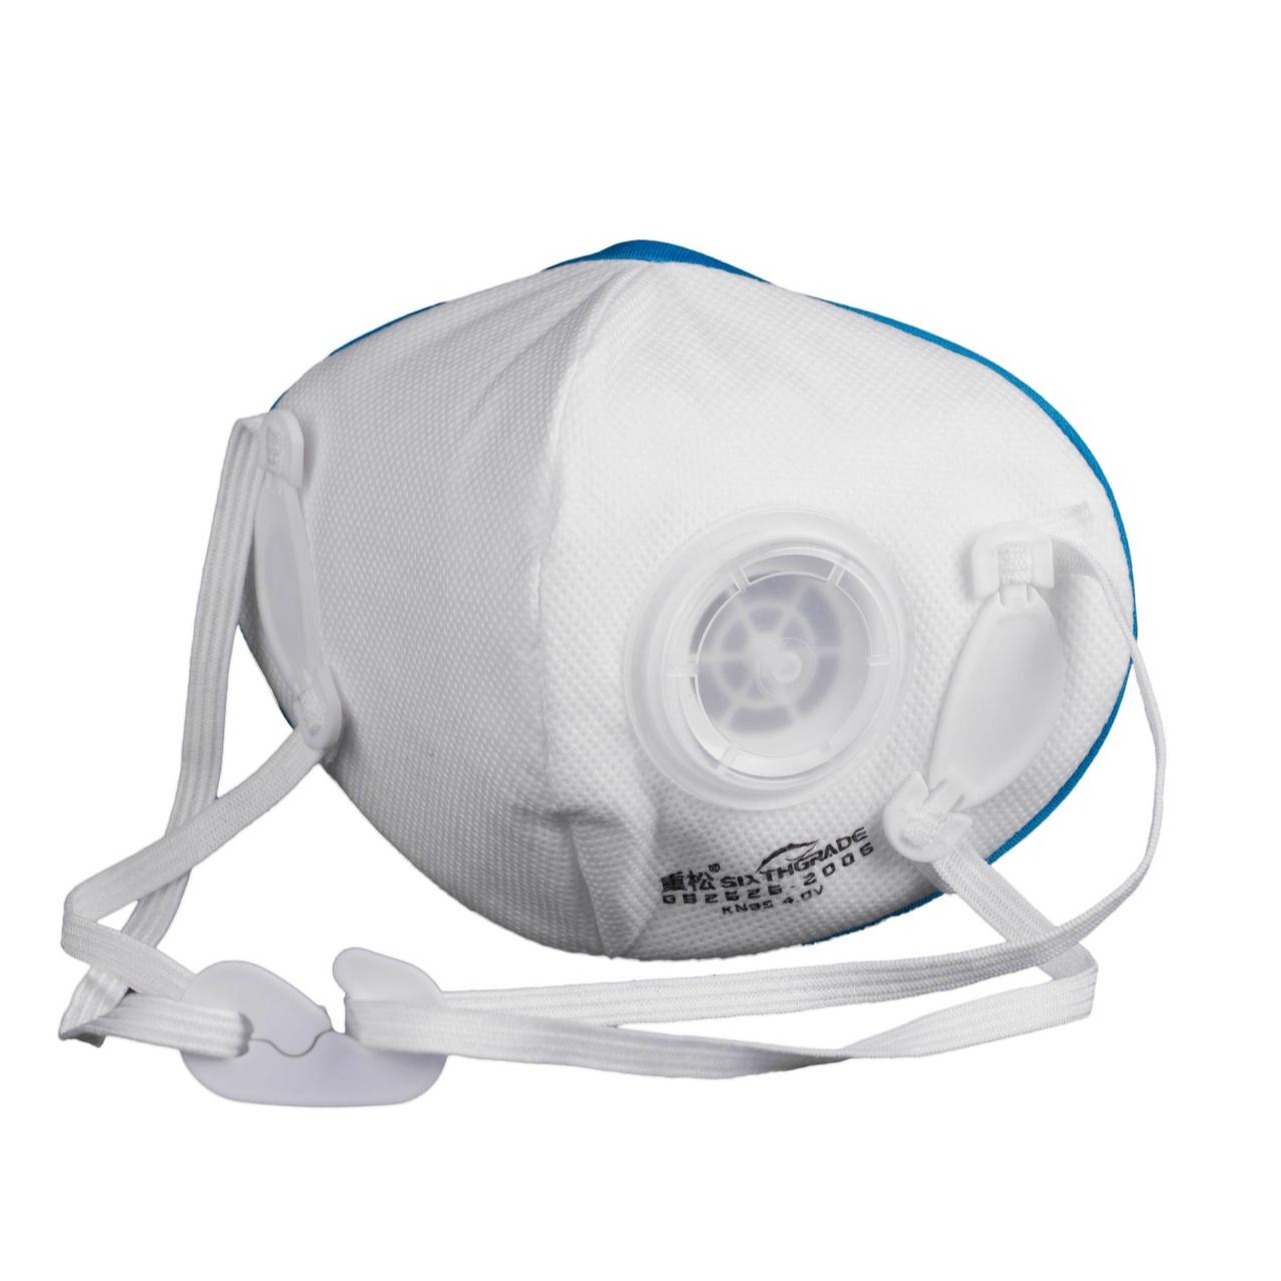 LSK医用外科口罩呼吸阀气密性试验仪-口罩呼吸气密性测试仪/GB2626口罩呼吸阻力气密性测试仪图片